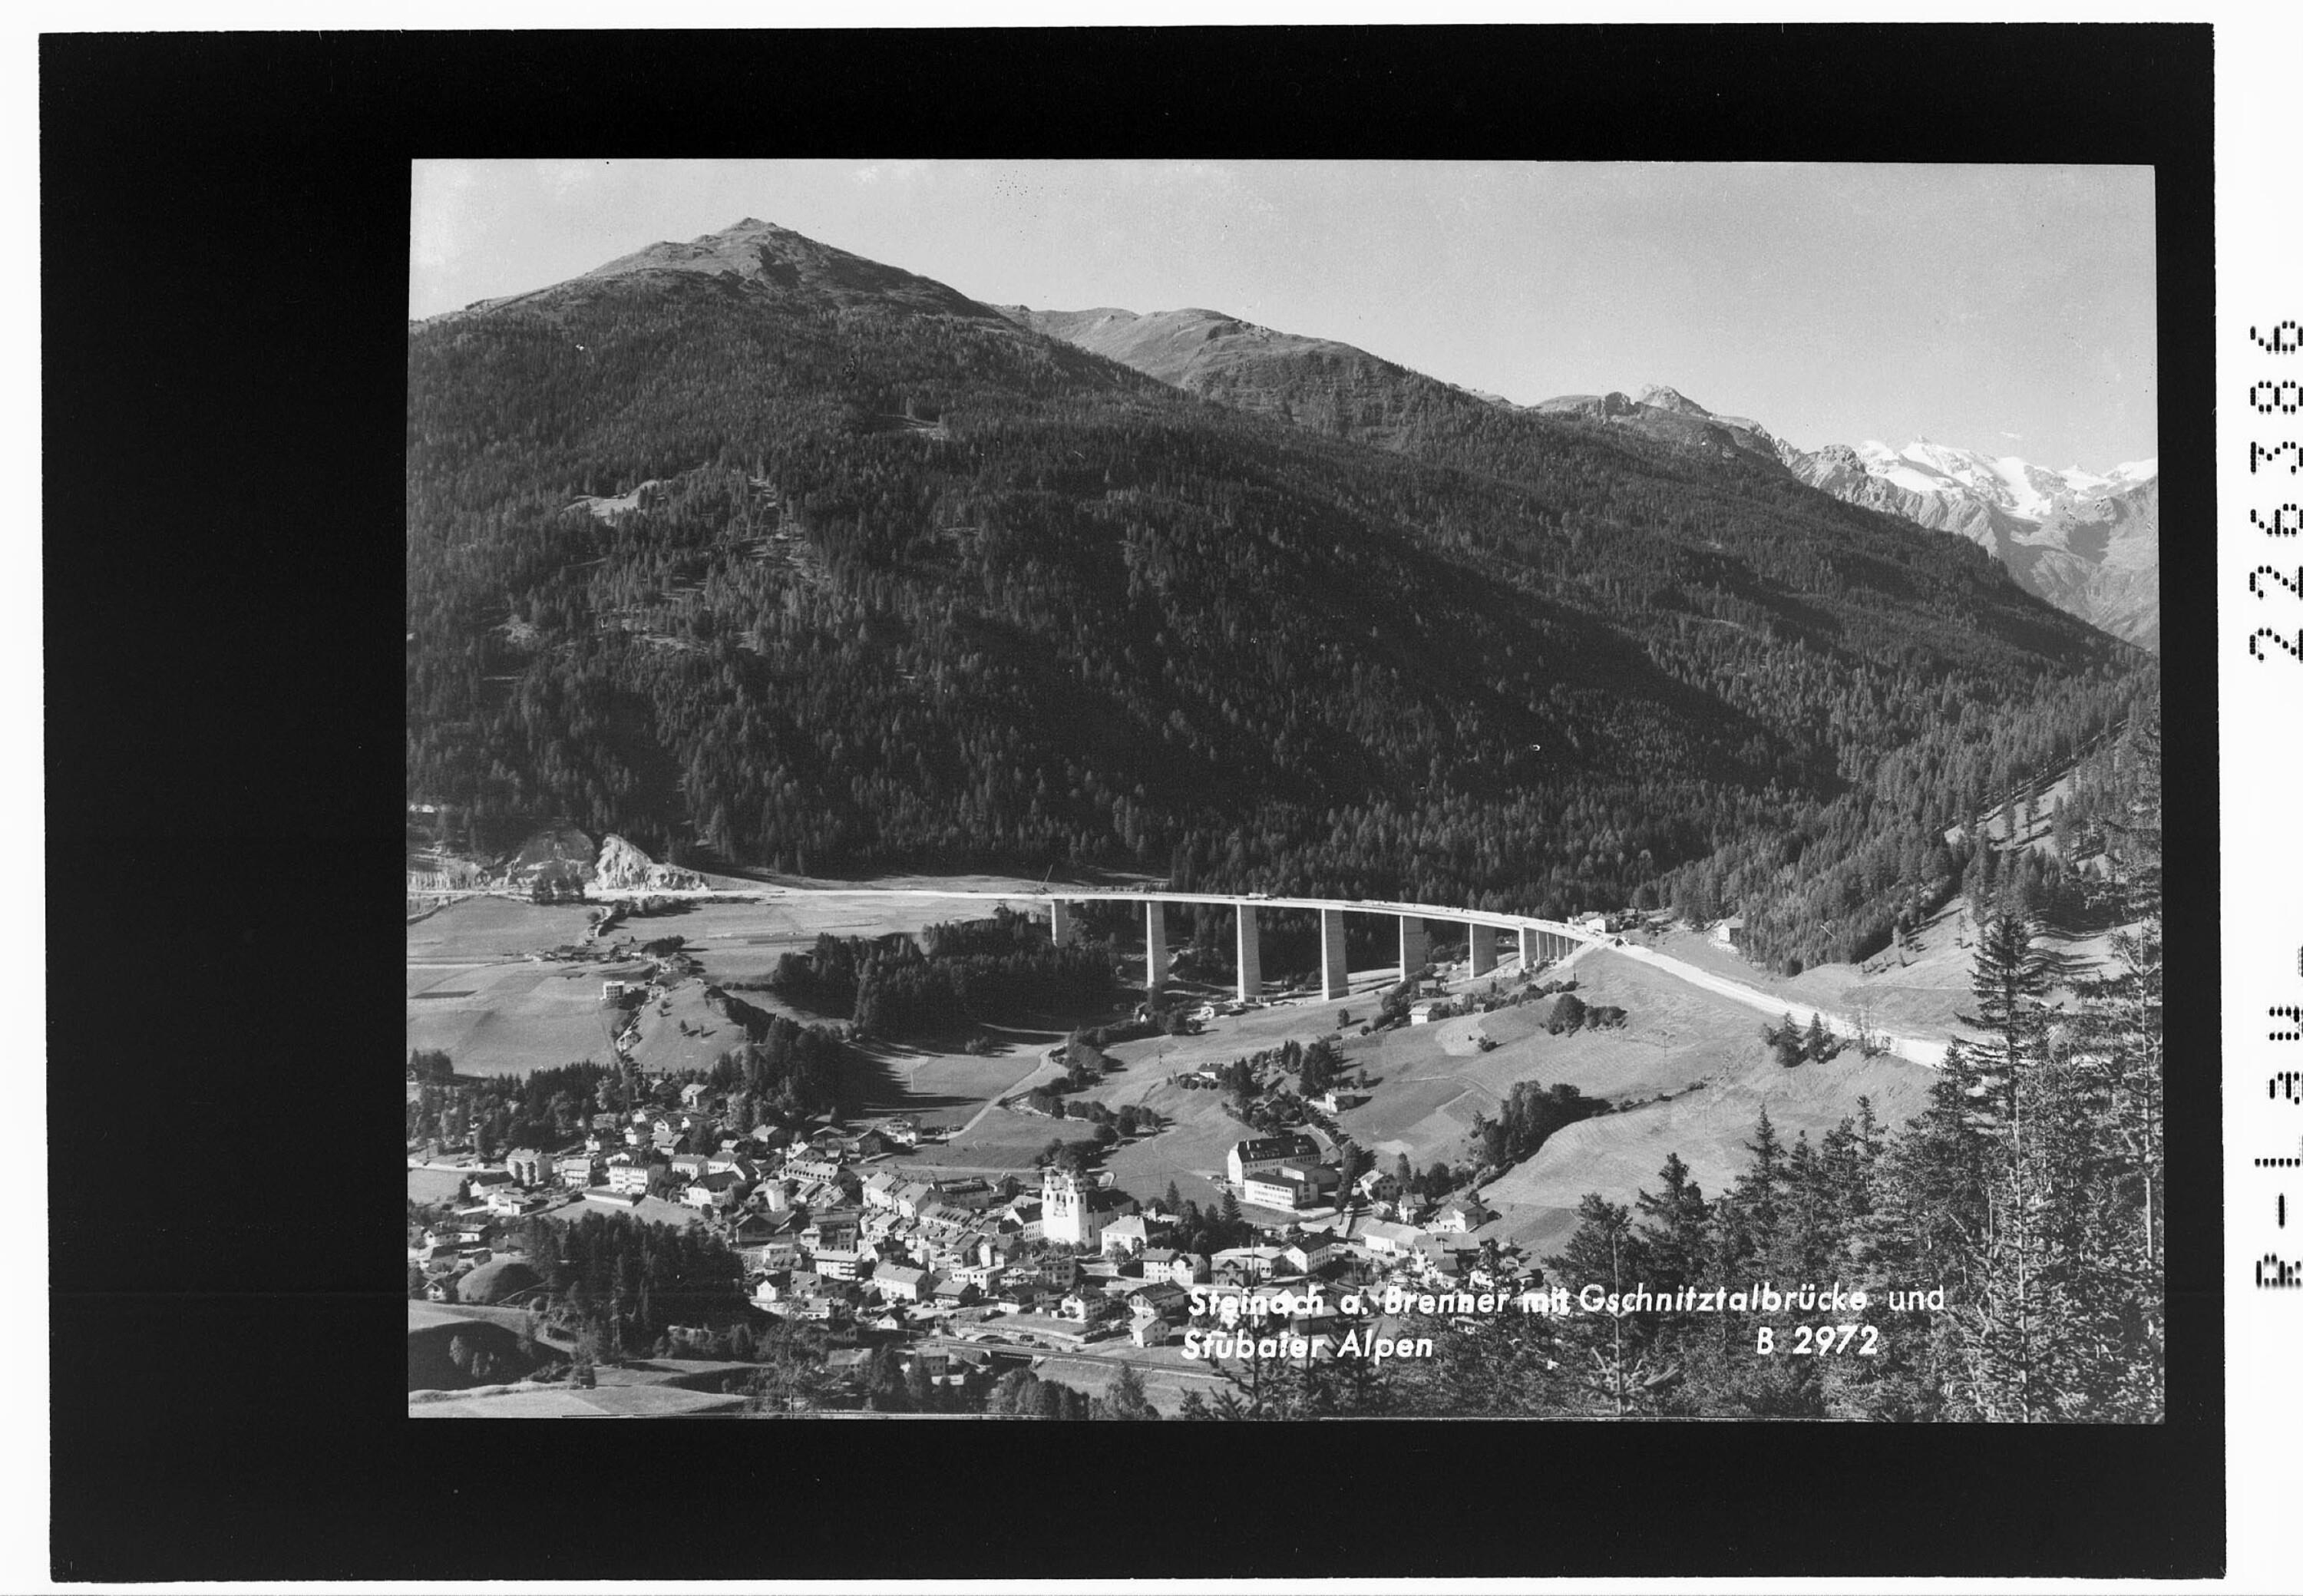 Steinach am Brenner mit Gschnitztalbrücke und Stubaier Alpen></div>


    <hr>
    <div class=